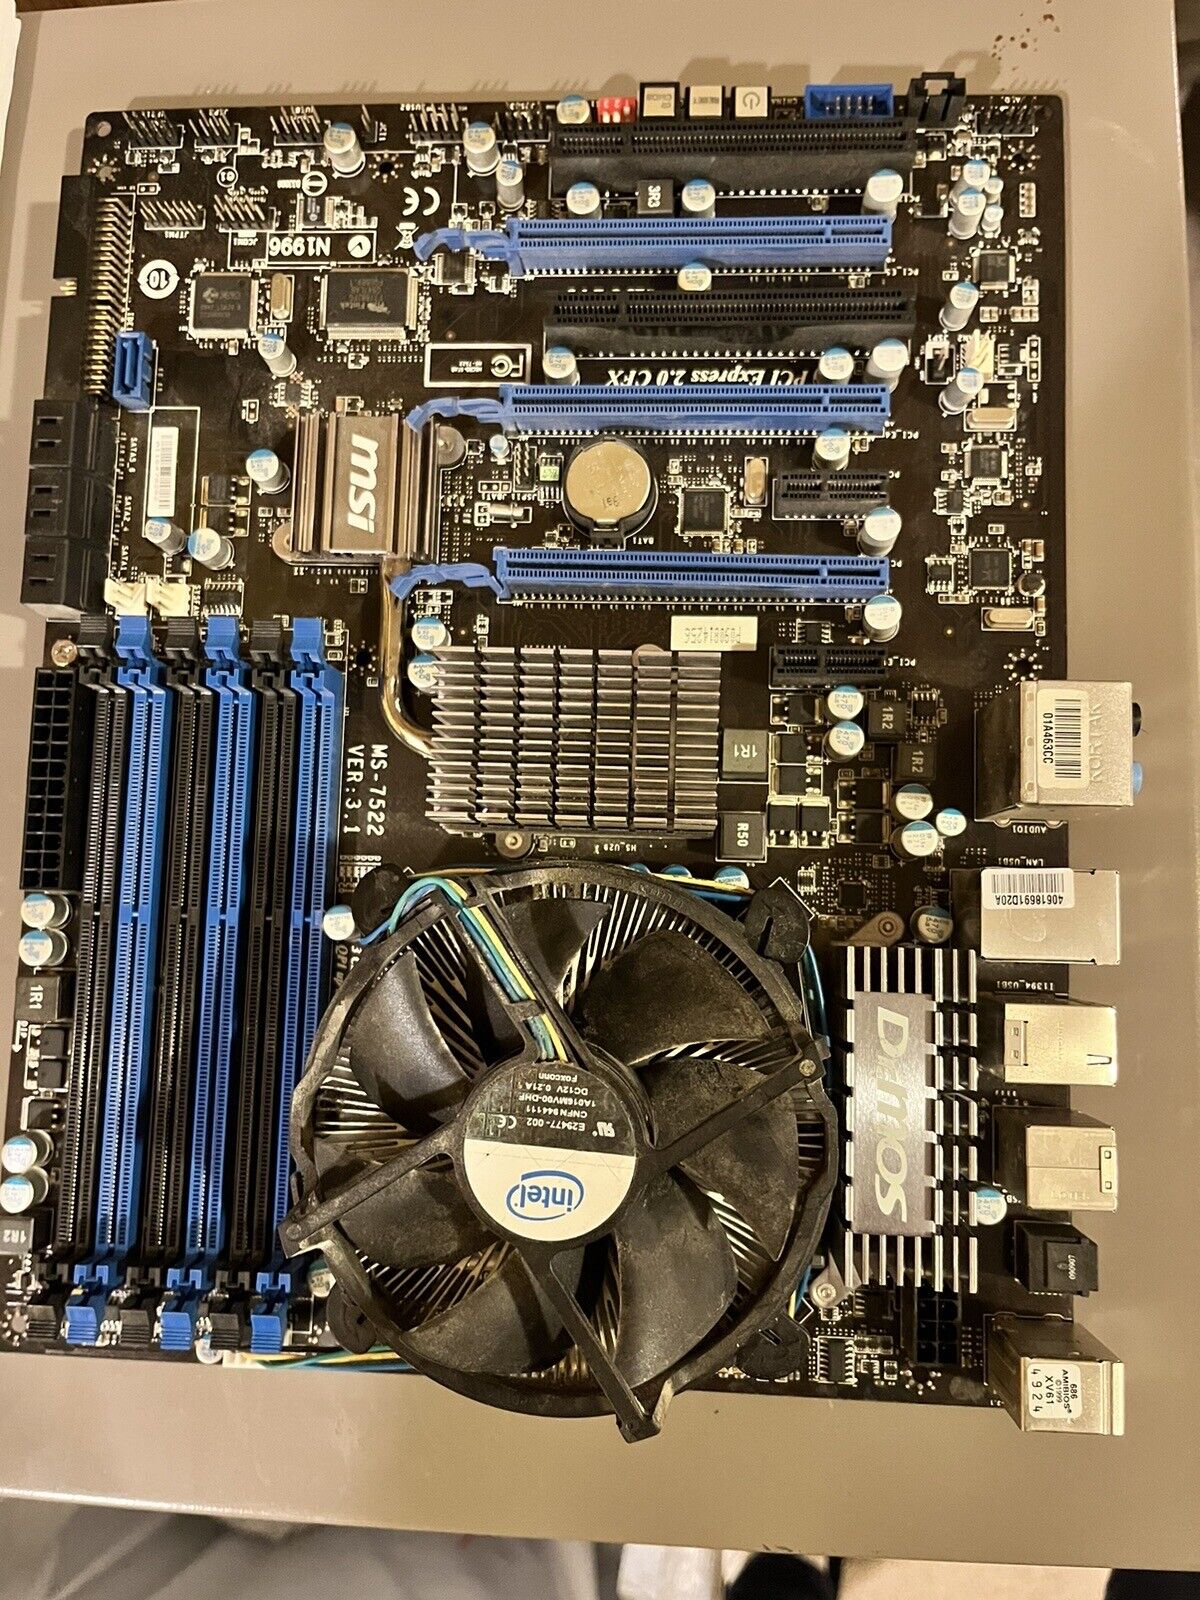 MSI X58 Pro Motherboard MS-7522 Ver 3.1 LGA 1366 Intel Core i7 W/ Heat Sink Fan